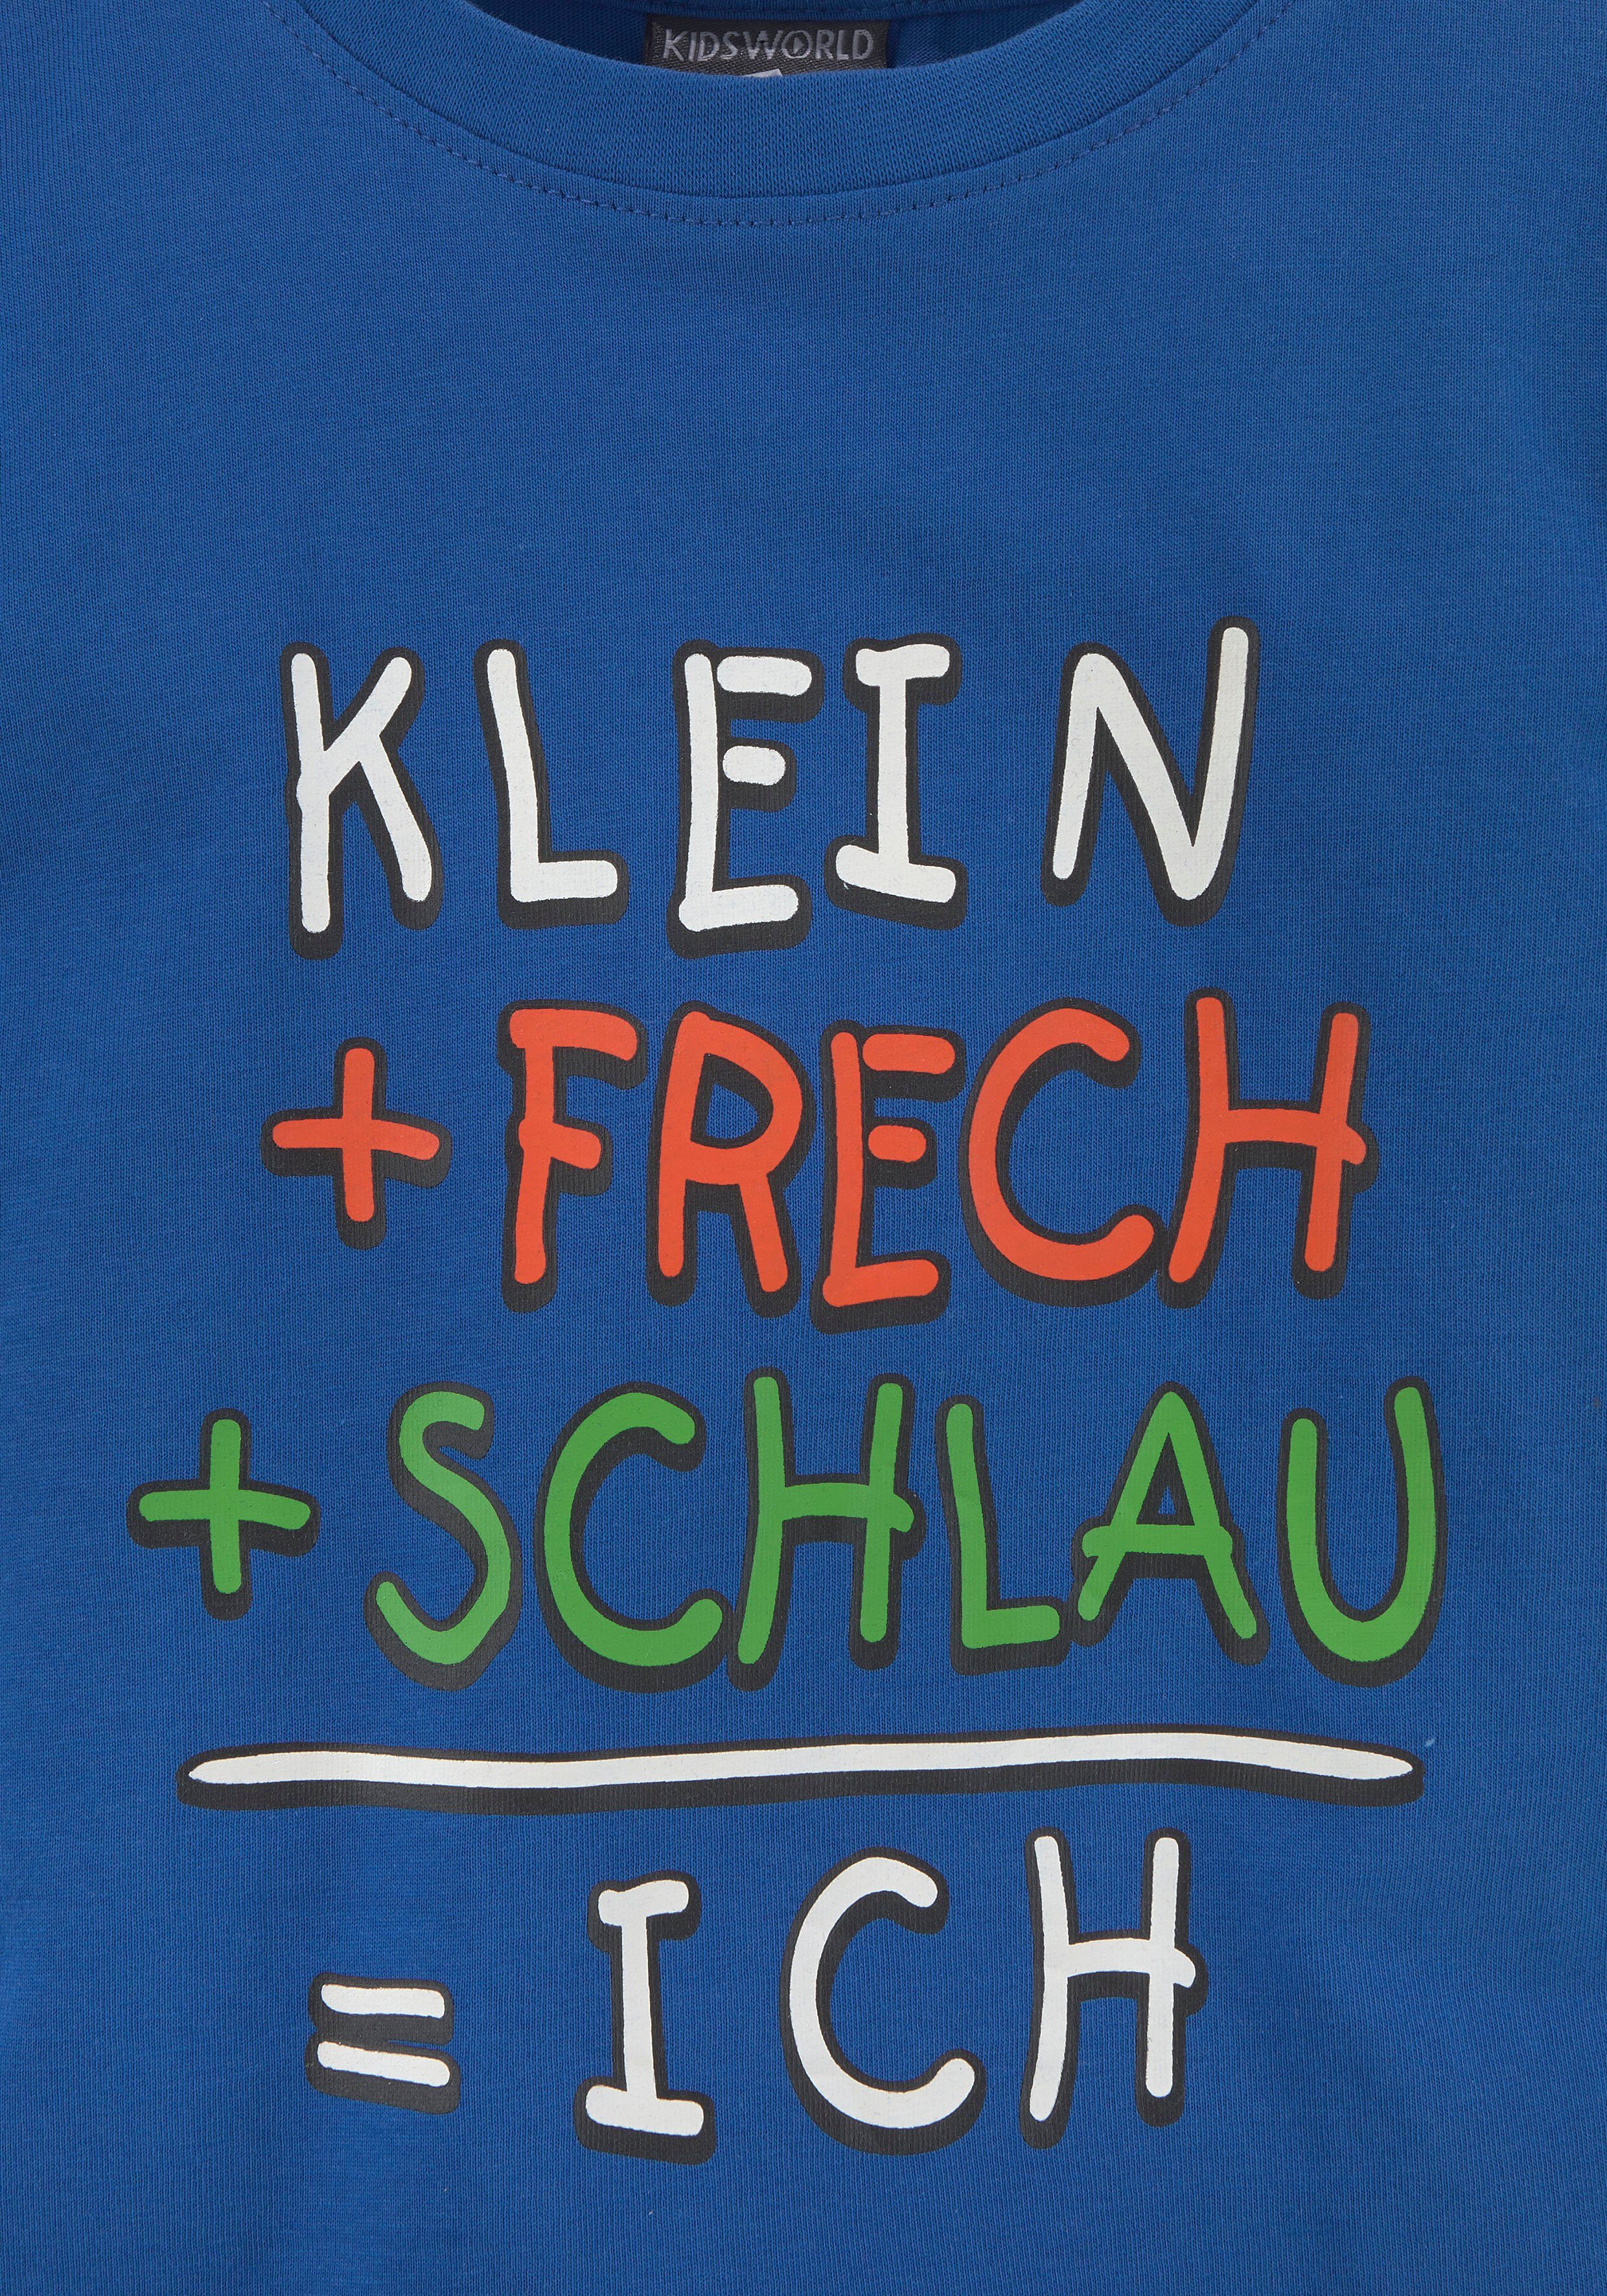 KIDSWORLD T-Shirt KLEIN+FRECH+SCHLAU...